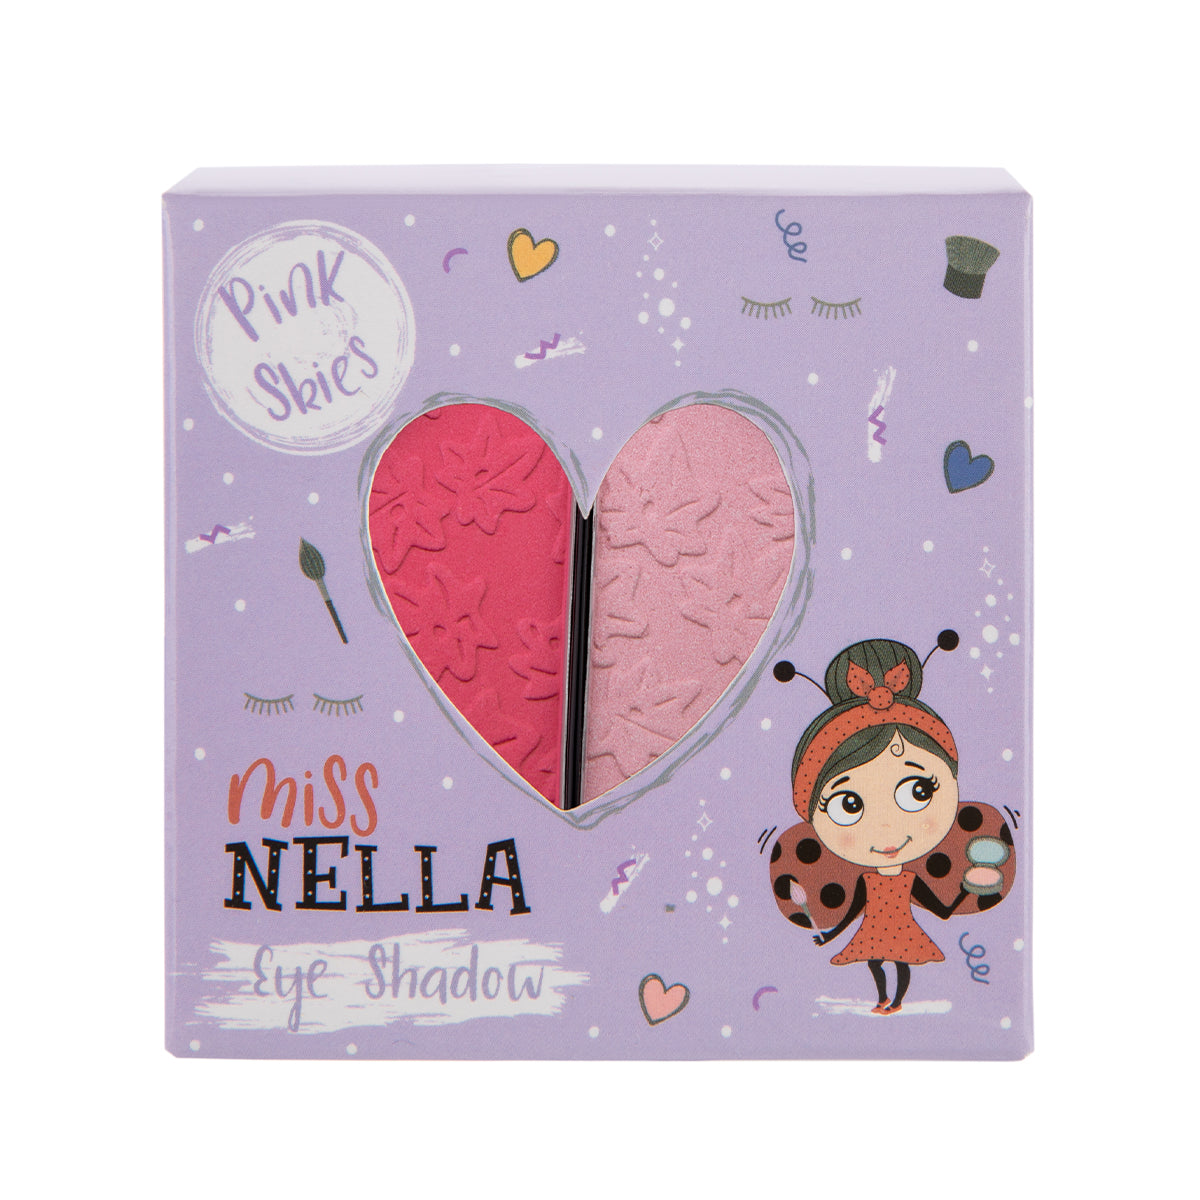 Laat de oogleden van jouw kindje shinen met de oogschaduw pink skies van het merk Miss Nella. De make-up speciaal ontworpen voor kinderen en is vrij van chemicaliën, parfum en alcohol. In verschillende kleuren. VanZus